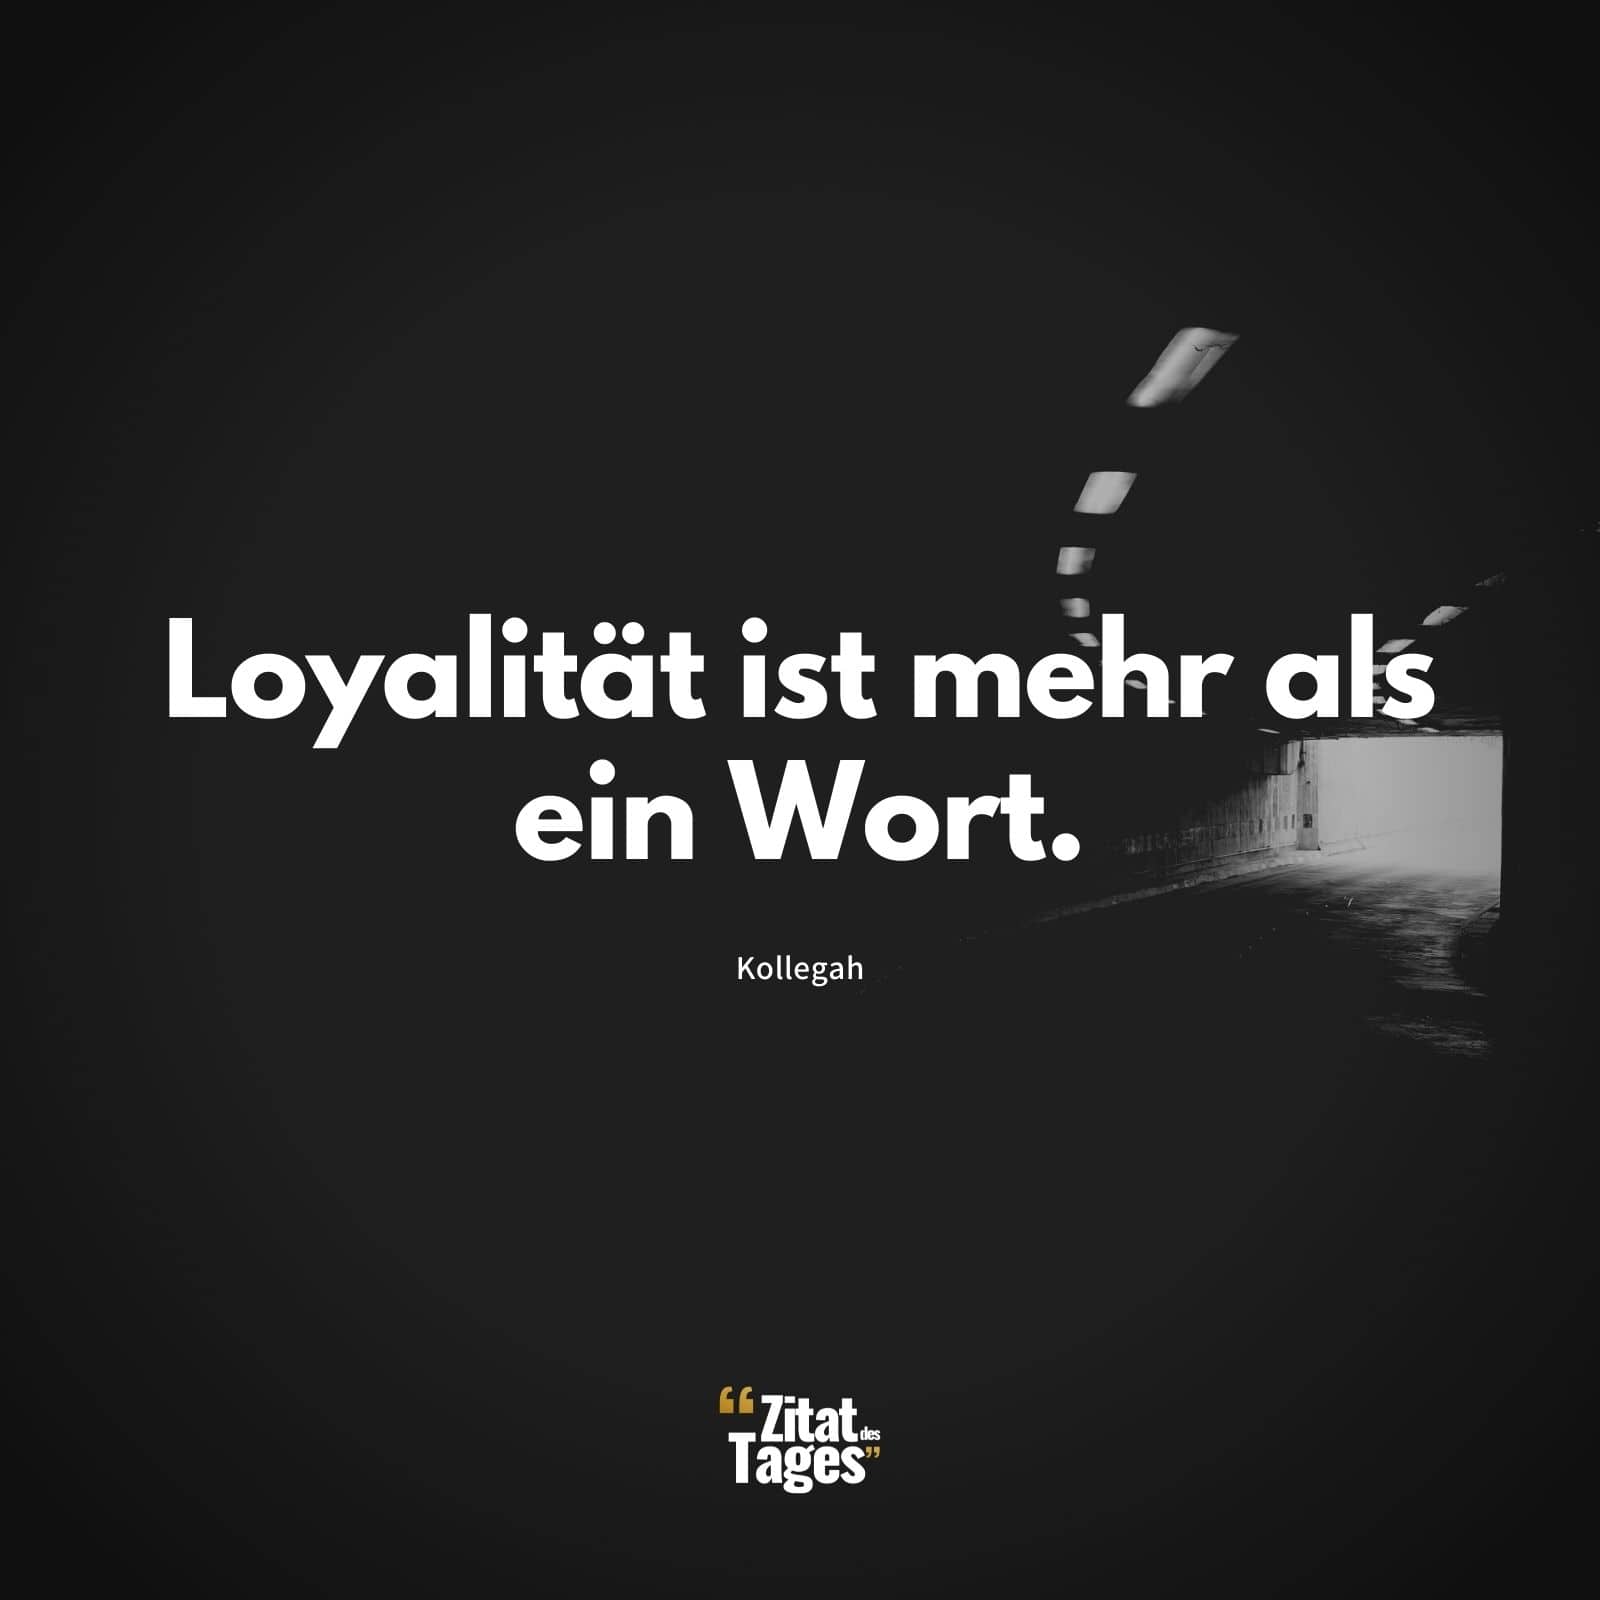 Loyalität ist mehr als ein Wort. - Kollegah